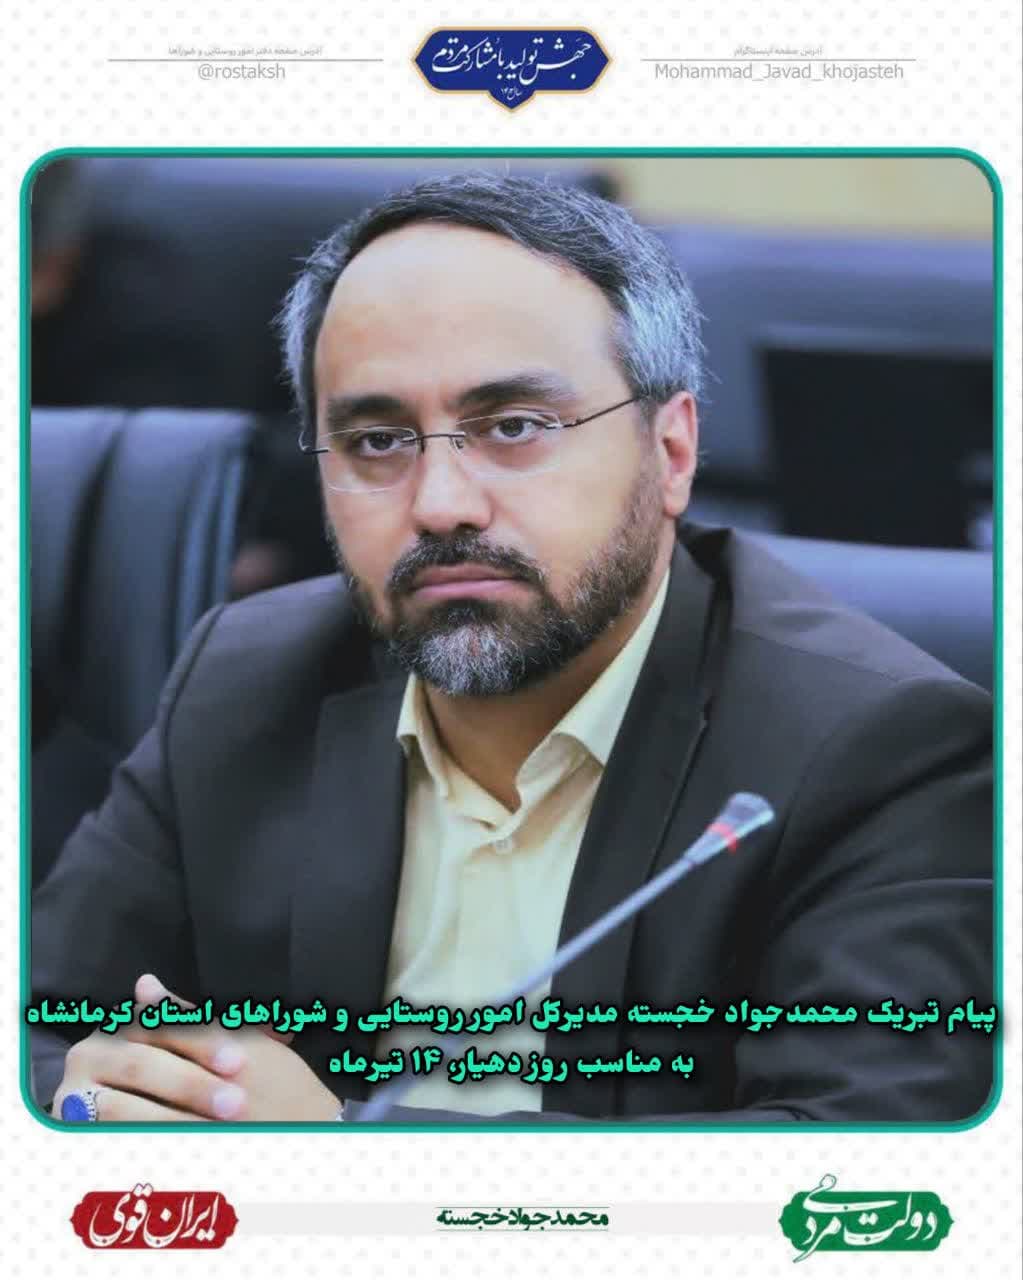 پیام-تبریک-دکتر-محمد-جواد-خجسته-مدیر-کل-امور-روستایی-و-شوراهای-استان-به-مناسبت-روز-دهیار